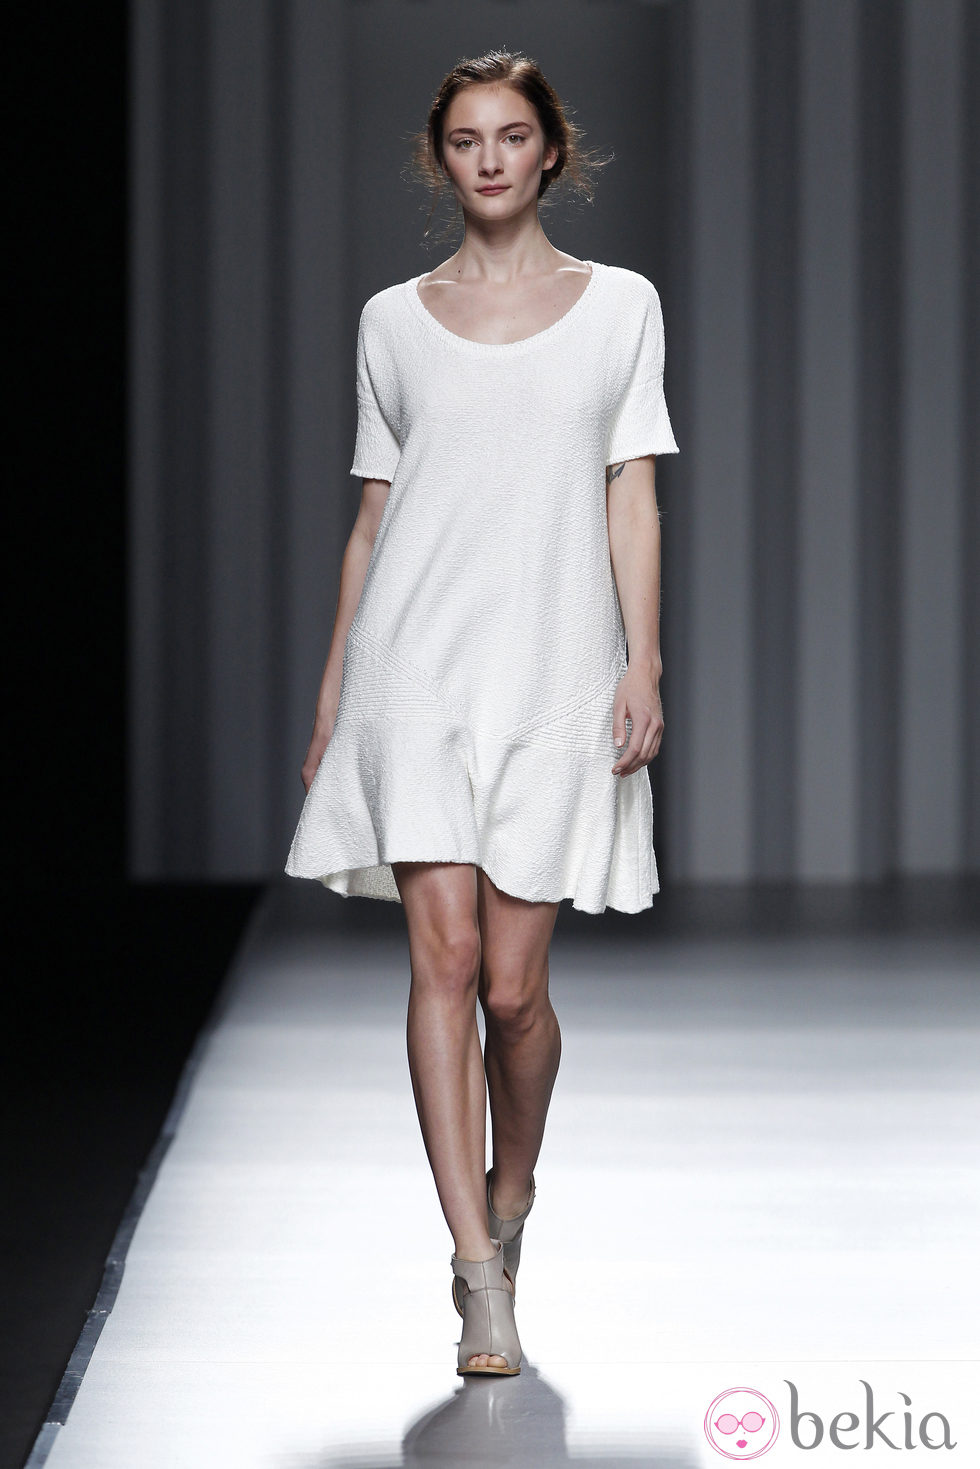 Vestido de la colección primavera/verano 2014 de Sita Murt en Madrid Fashion Week